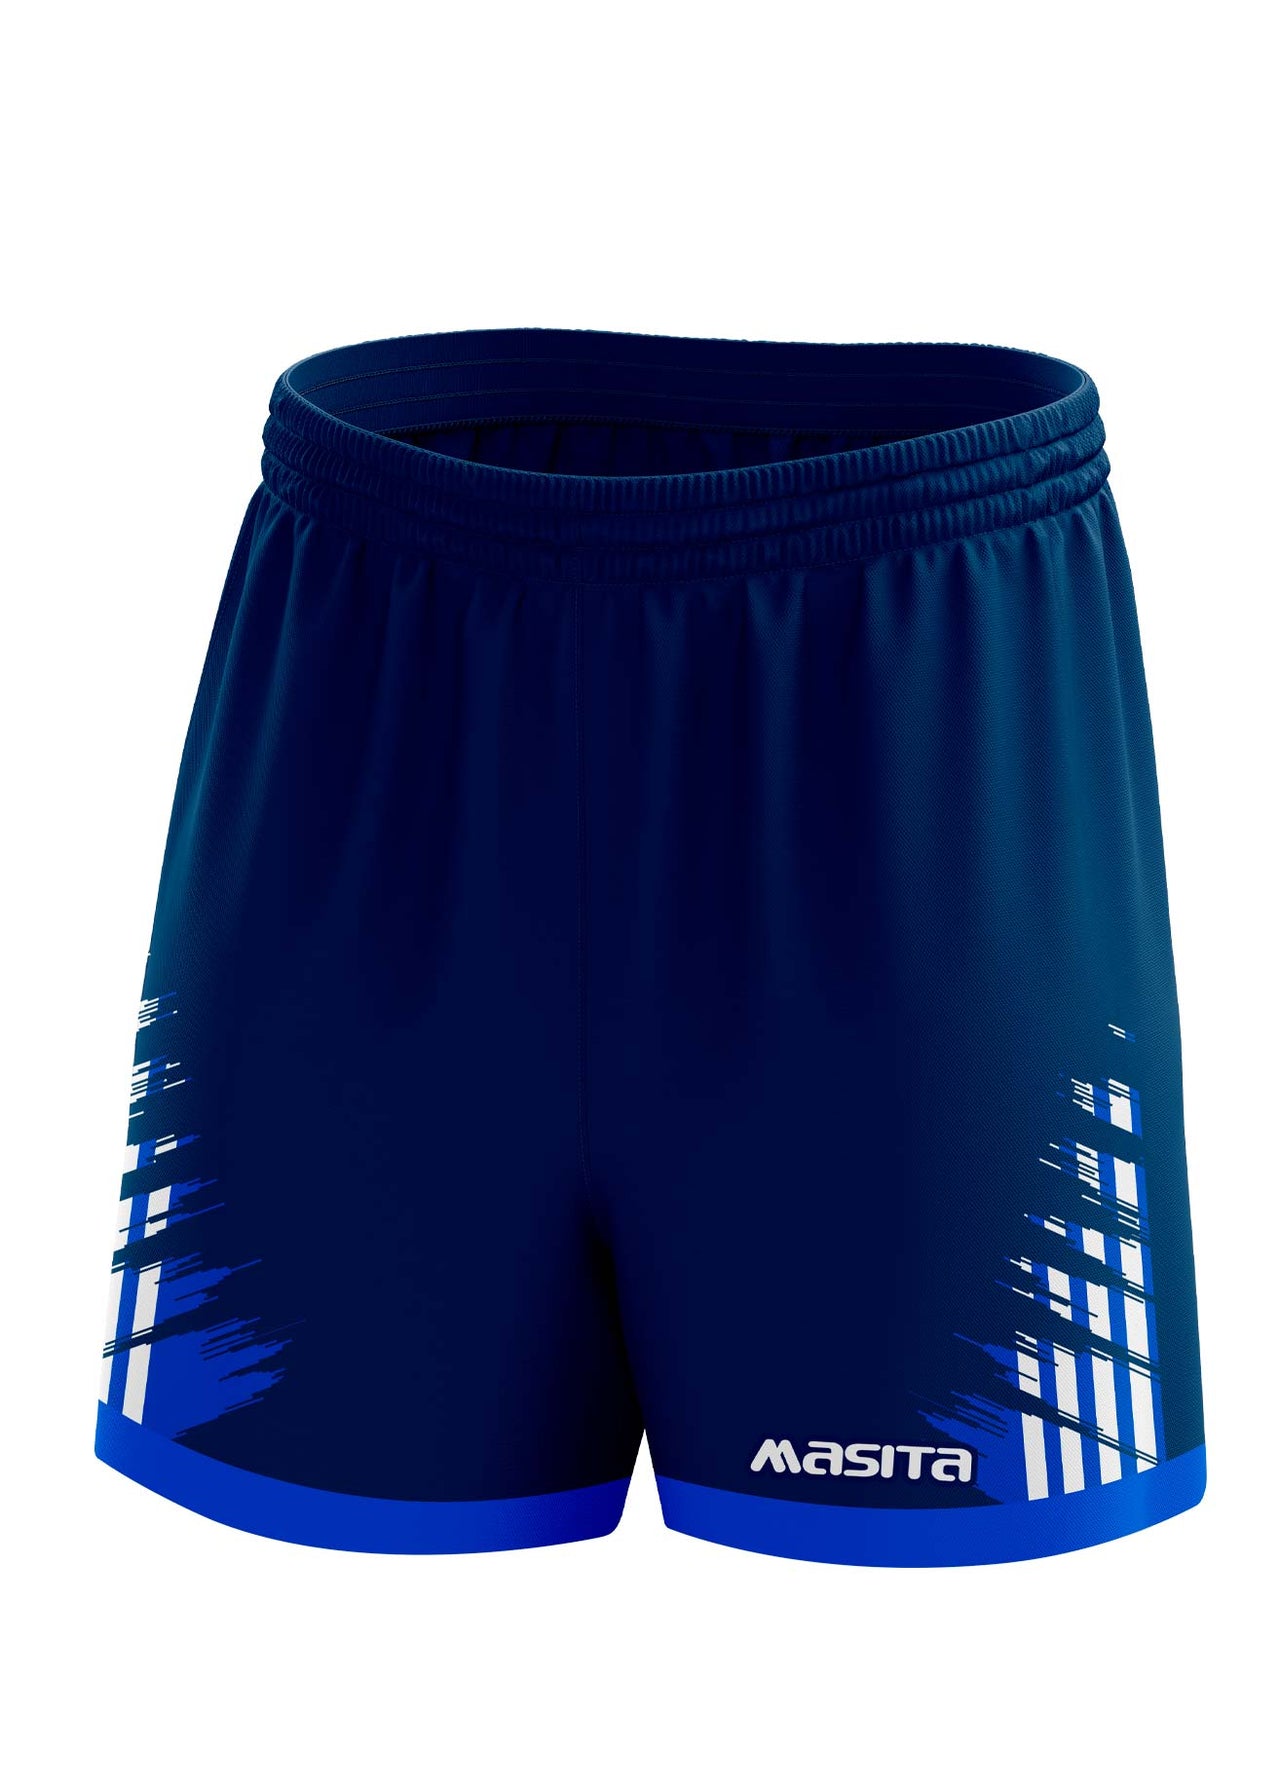 Barkley Gaelic Shorts Navy/Blue/White Adult